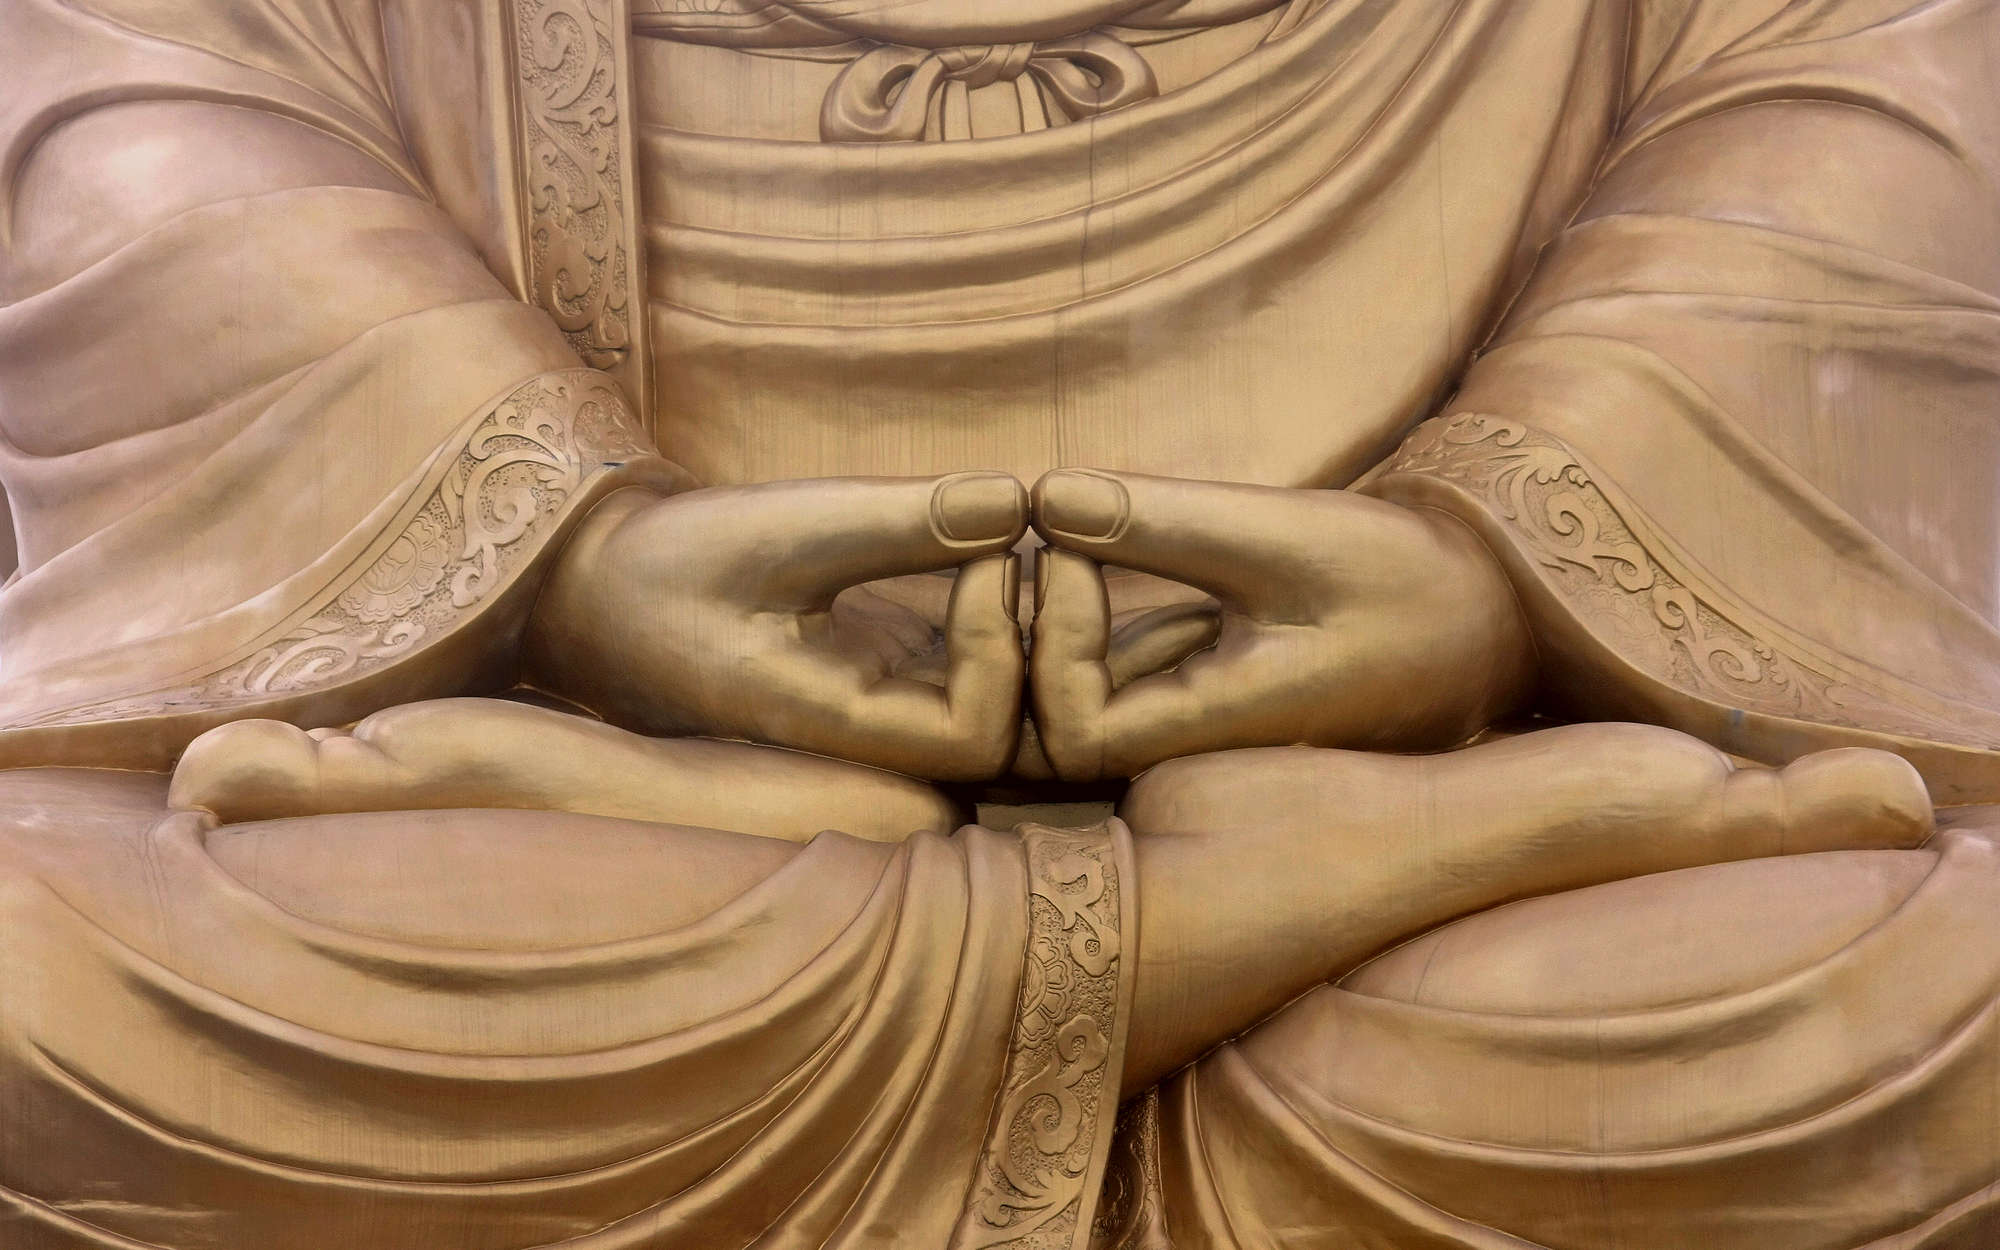             Fototapete Religion Buddha-Statue – Premium Glattvlies
        